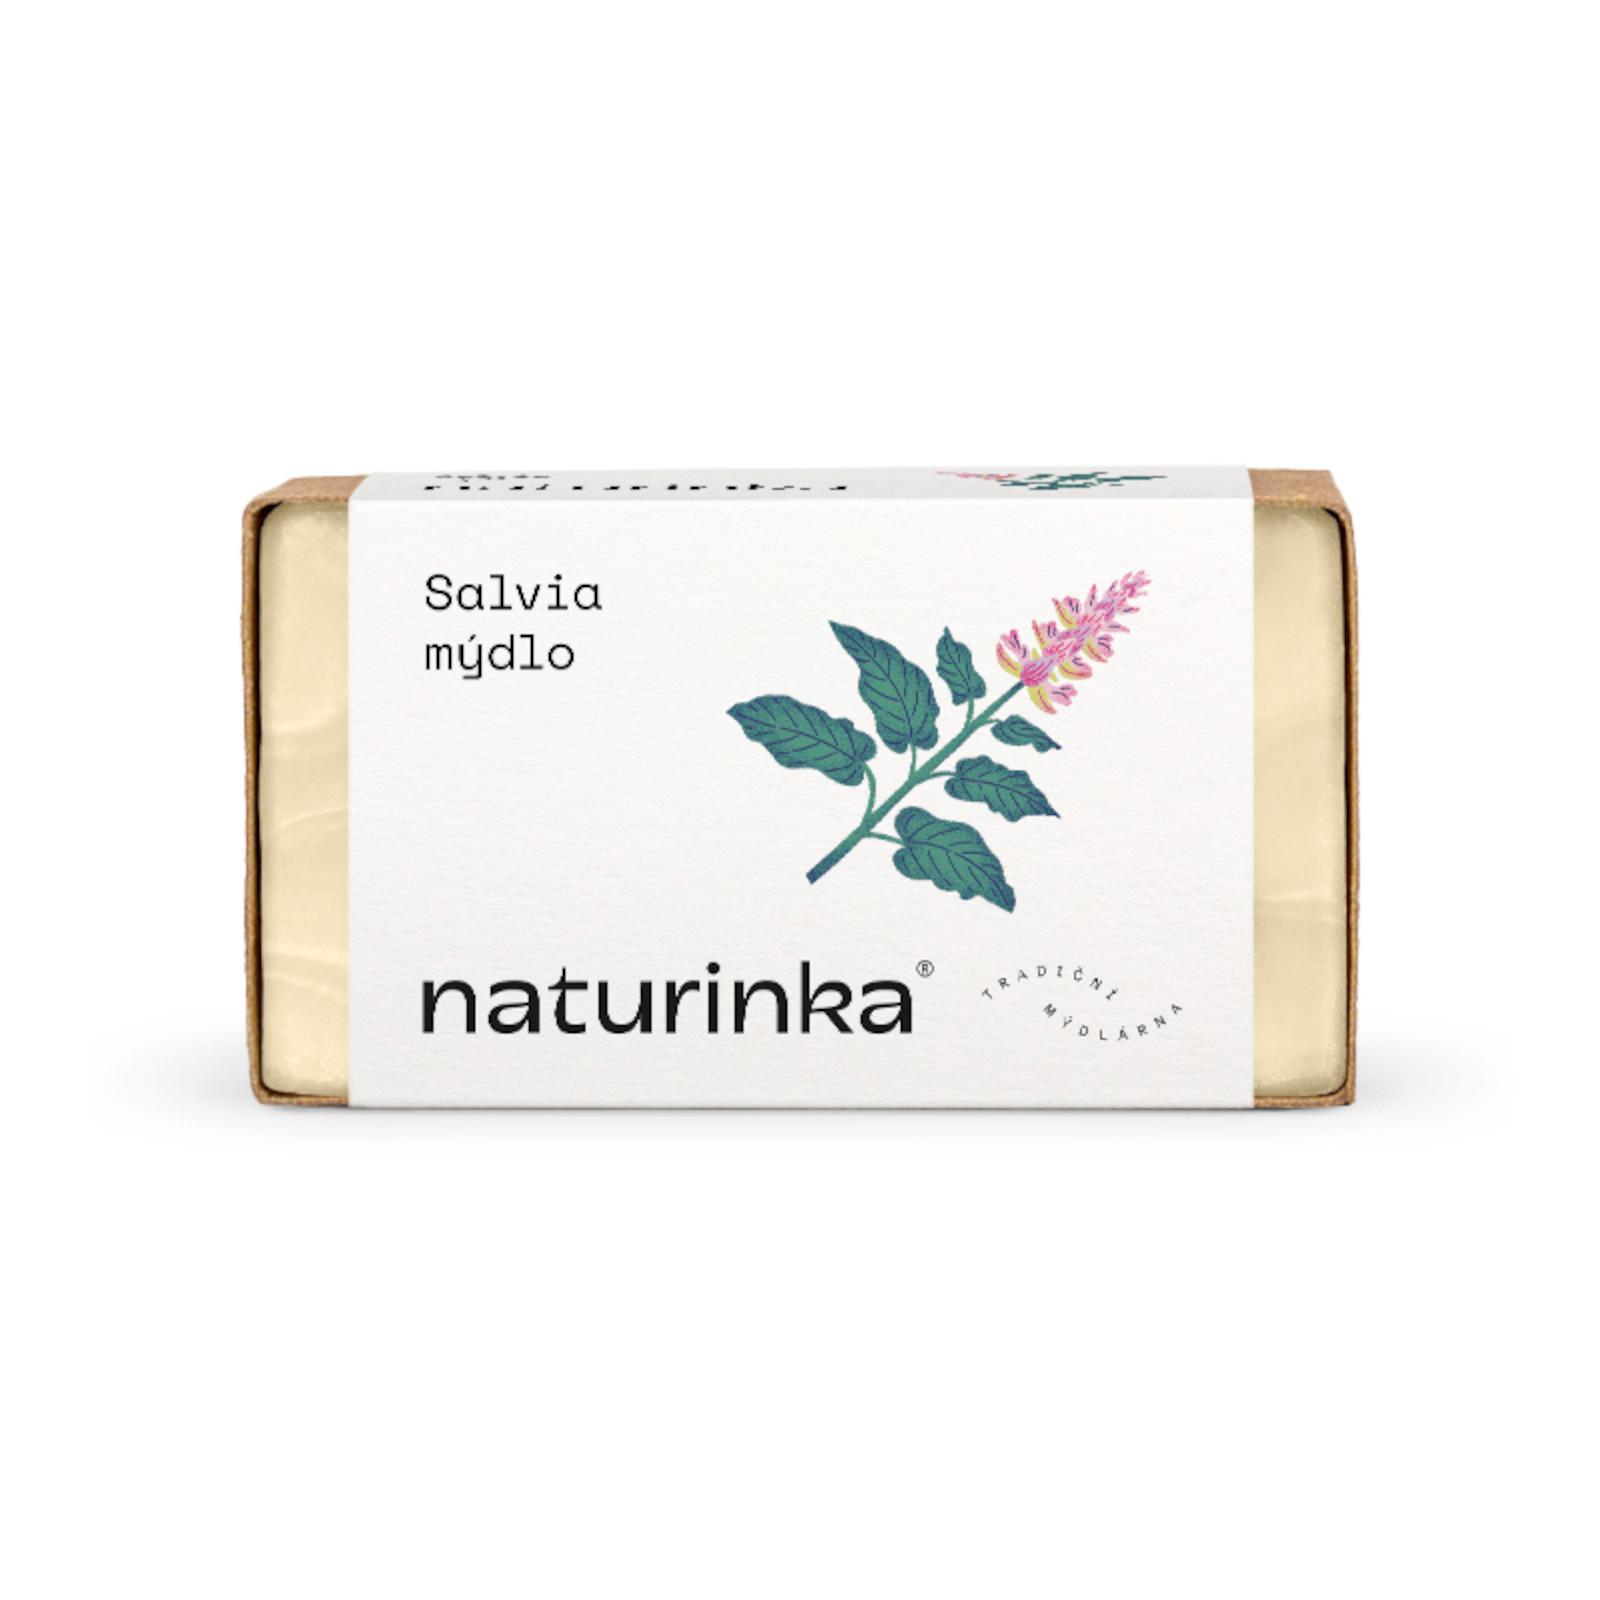 Naturinka Salvia mýdlo 110 g